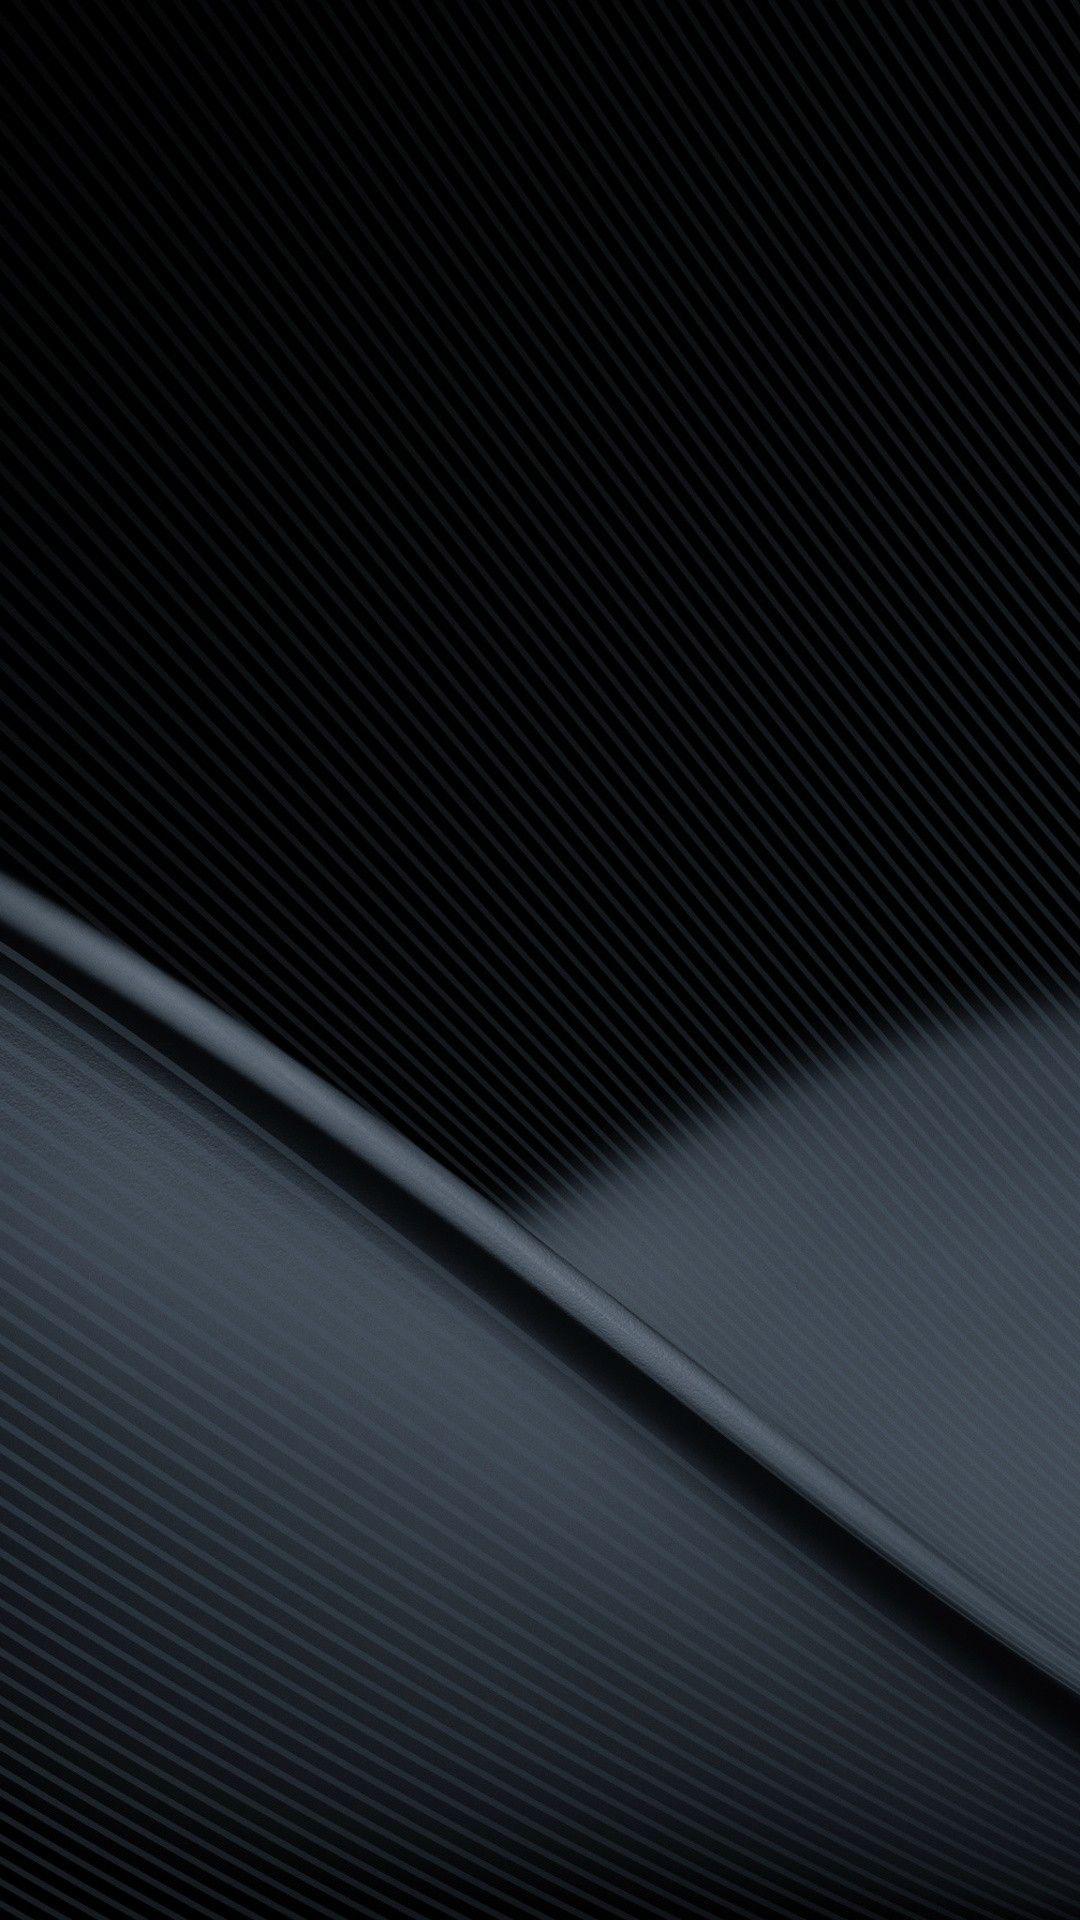 Black phone wallpaper. Black phone wallpaper, Android wallpaper black, Dark phone wallpaper